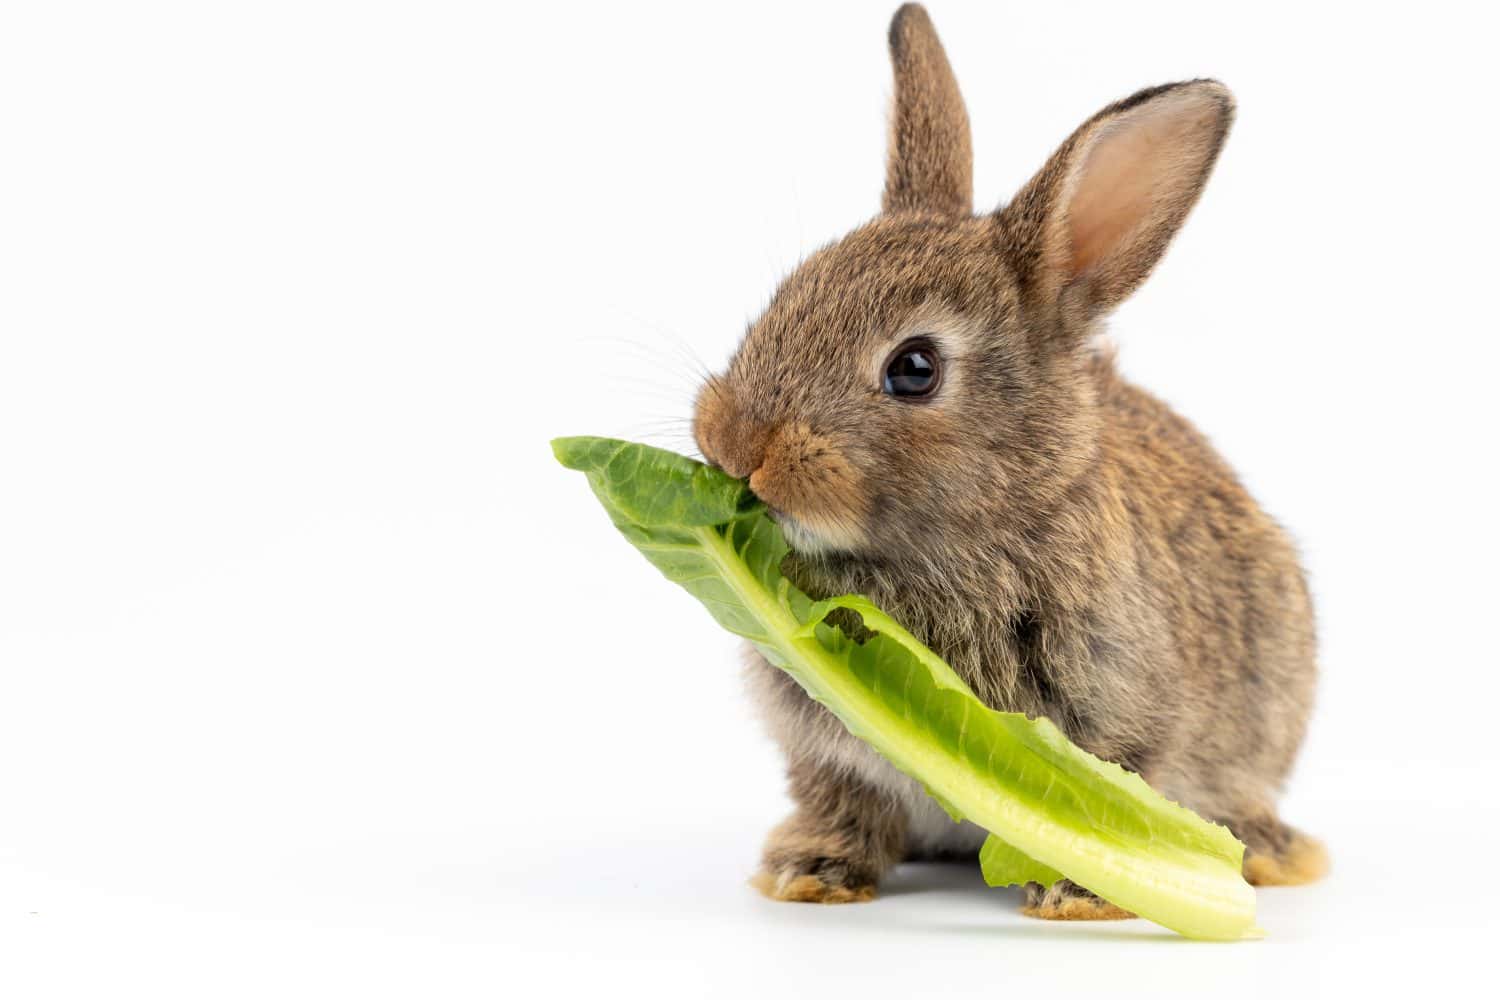 Un sano e adorabile coniglietto di pasqua soffice coniglio marrone che mangia cibo, verdure verdi, su sfondo bianco.  messa a fuoco selettiva.  Animale, cibo per conigli, concetto di stile di vita sano.